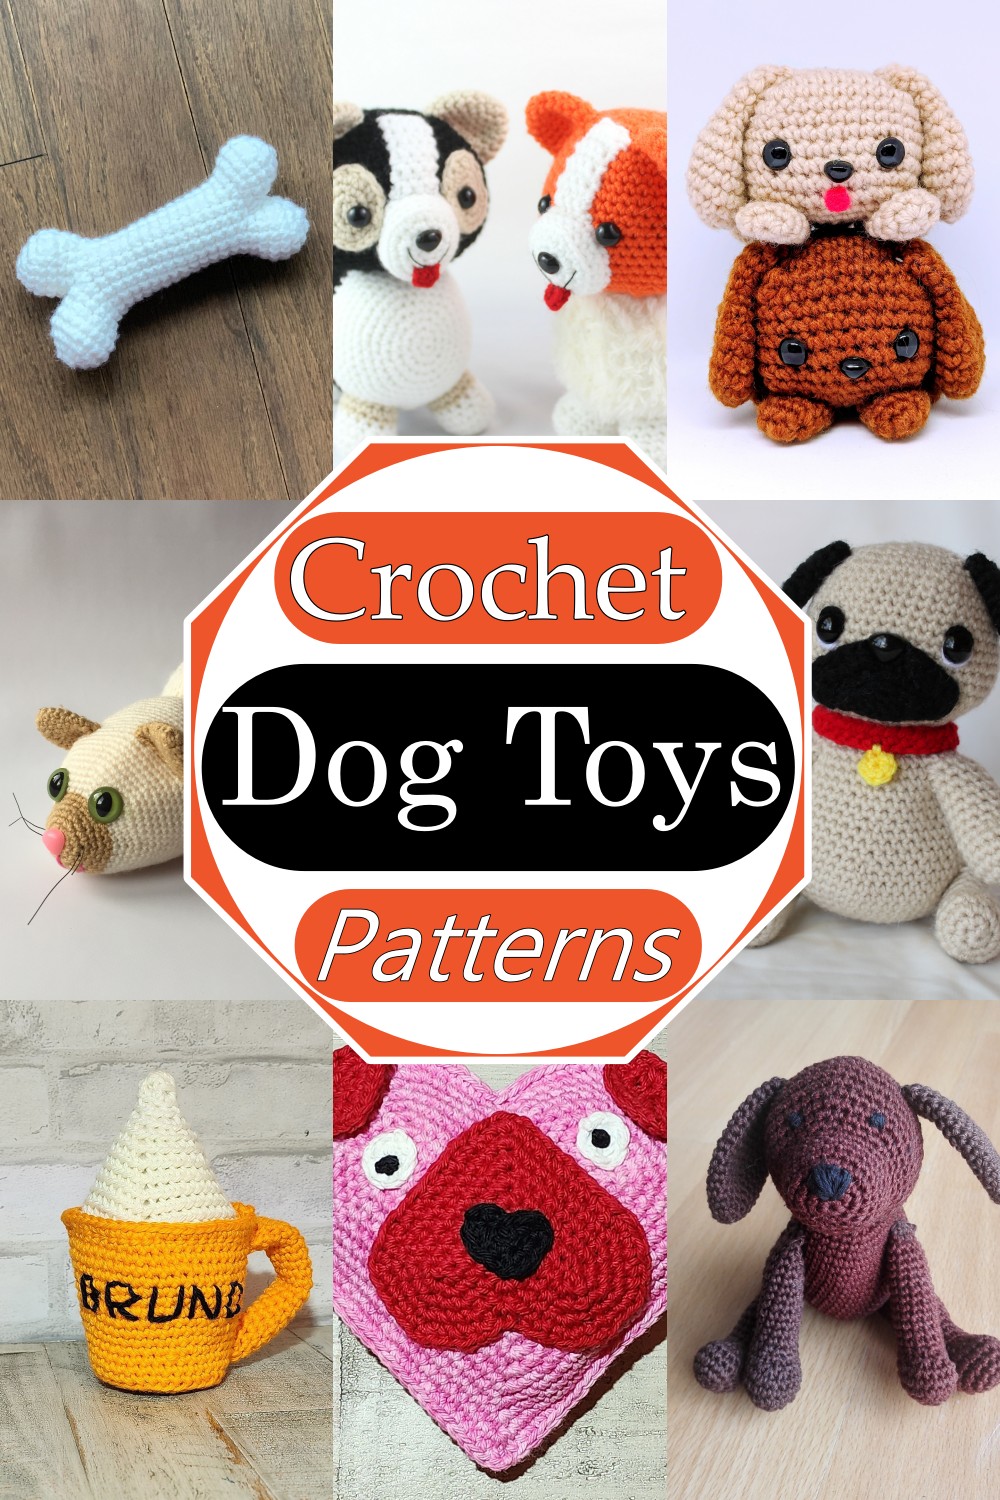 Crochet Dog Toys Patterns